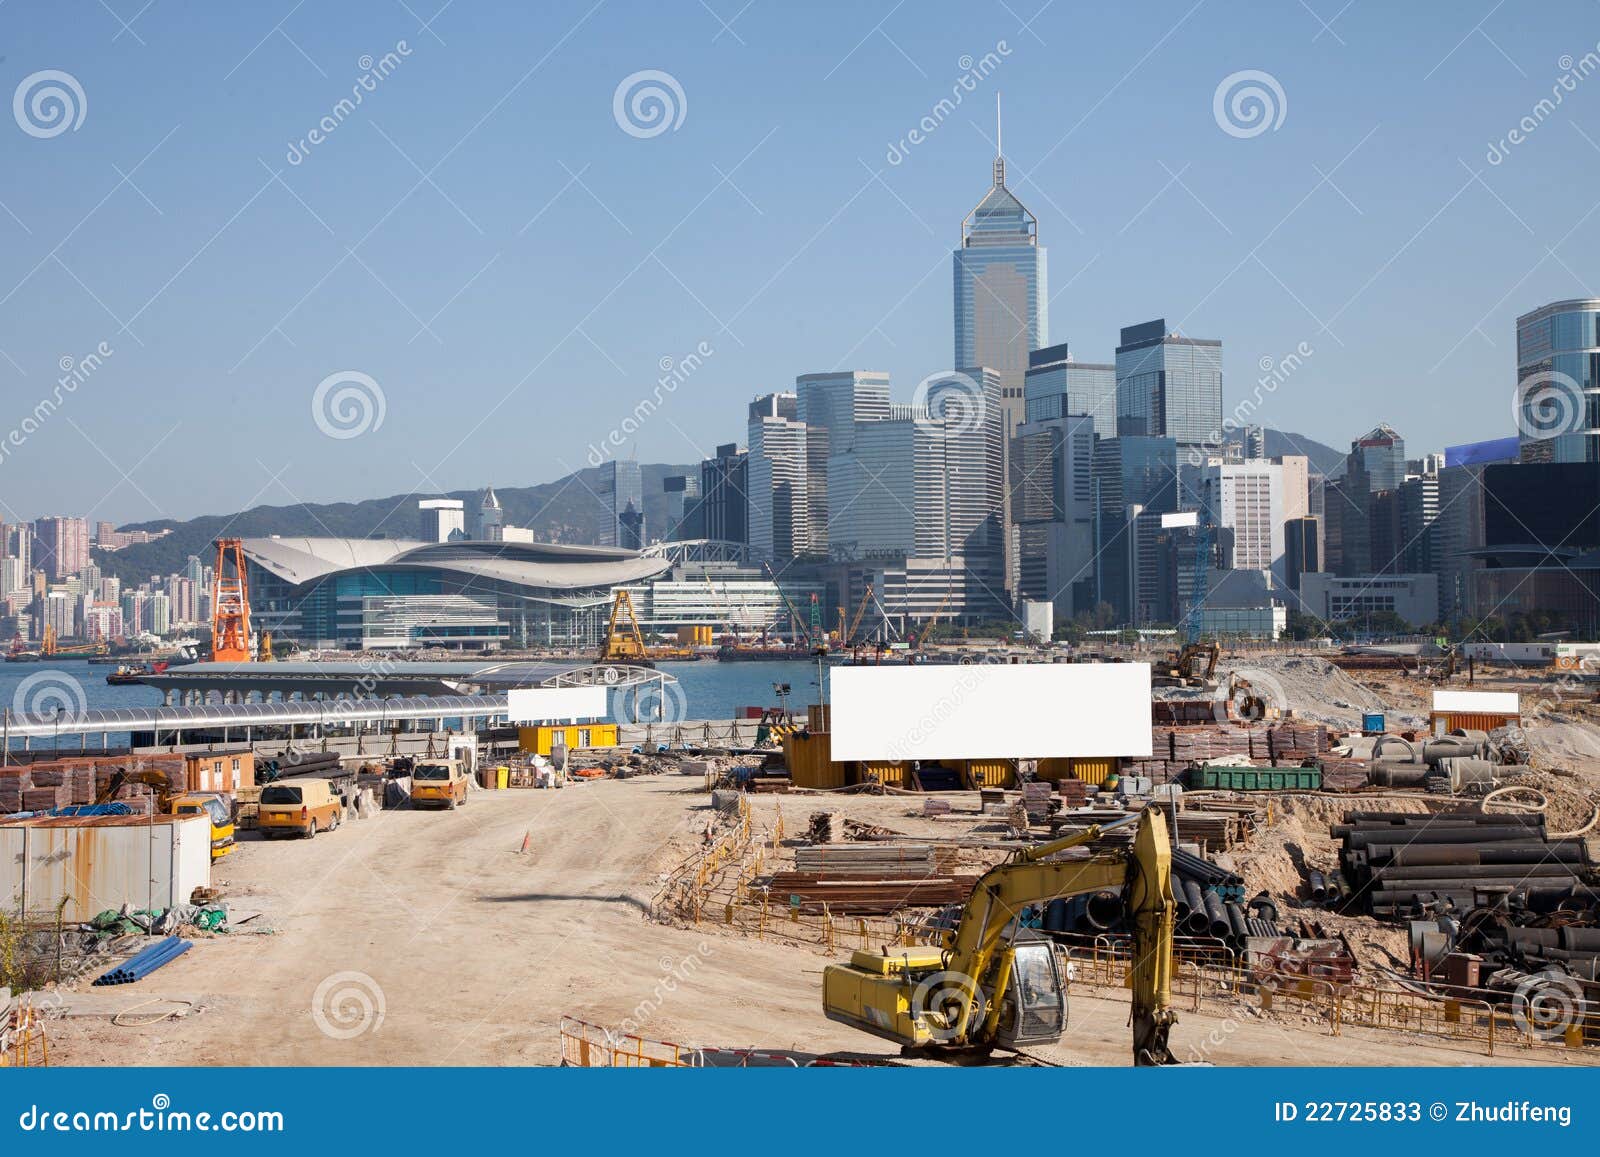 hongkong on construct